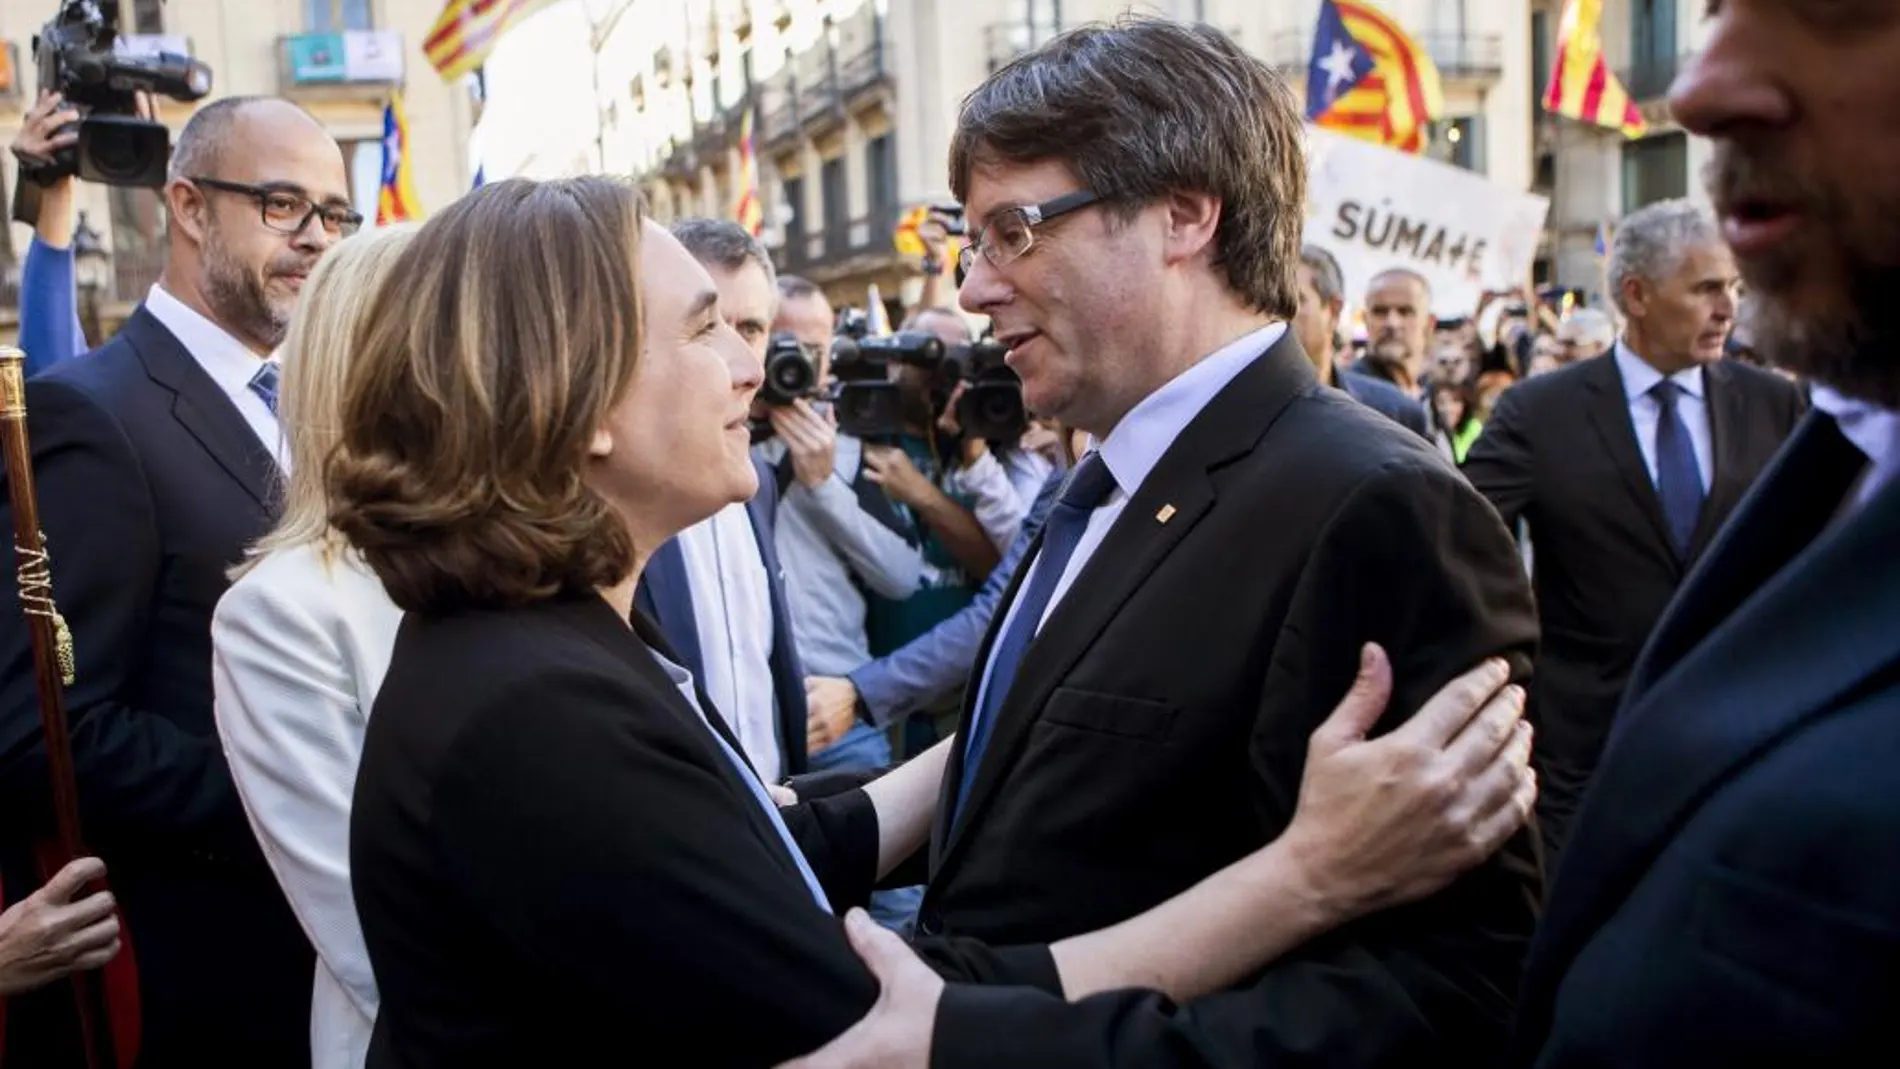 La alcaldesa de Barcelona, Ada Colau (i), saluda al presidente de la Generalitat, Carles Puigdemont (d), durante la concentración de alcaldes.